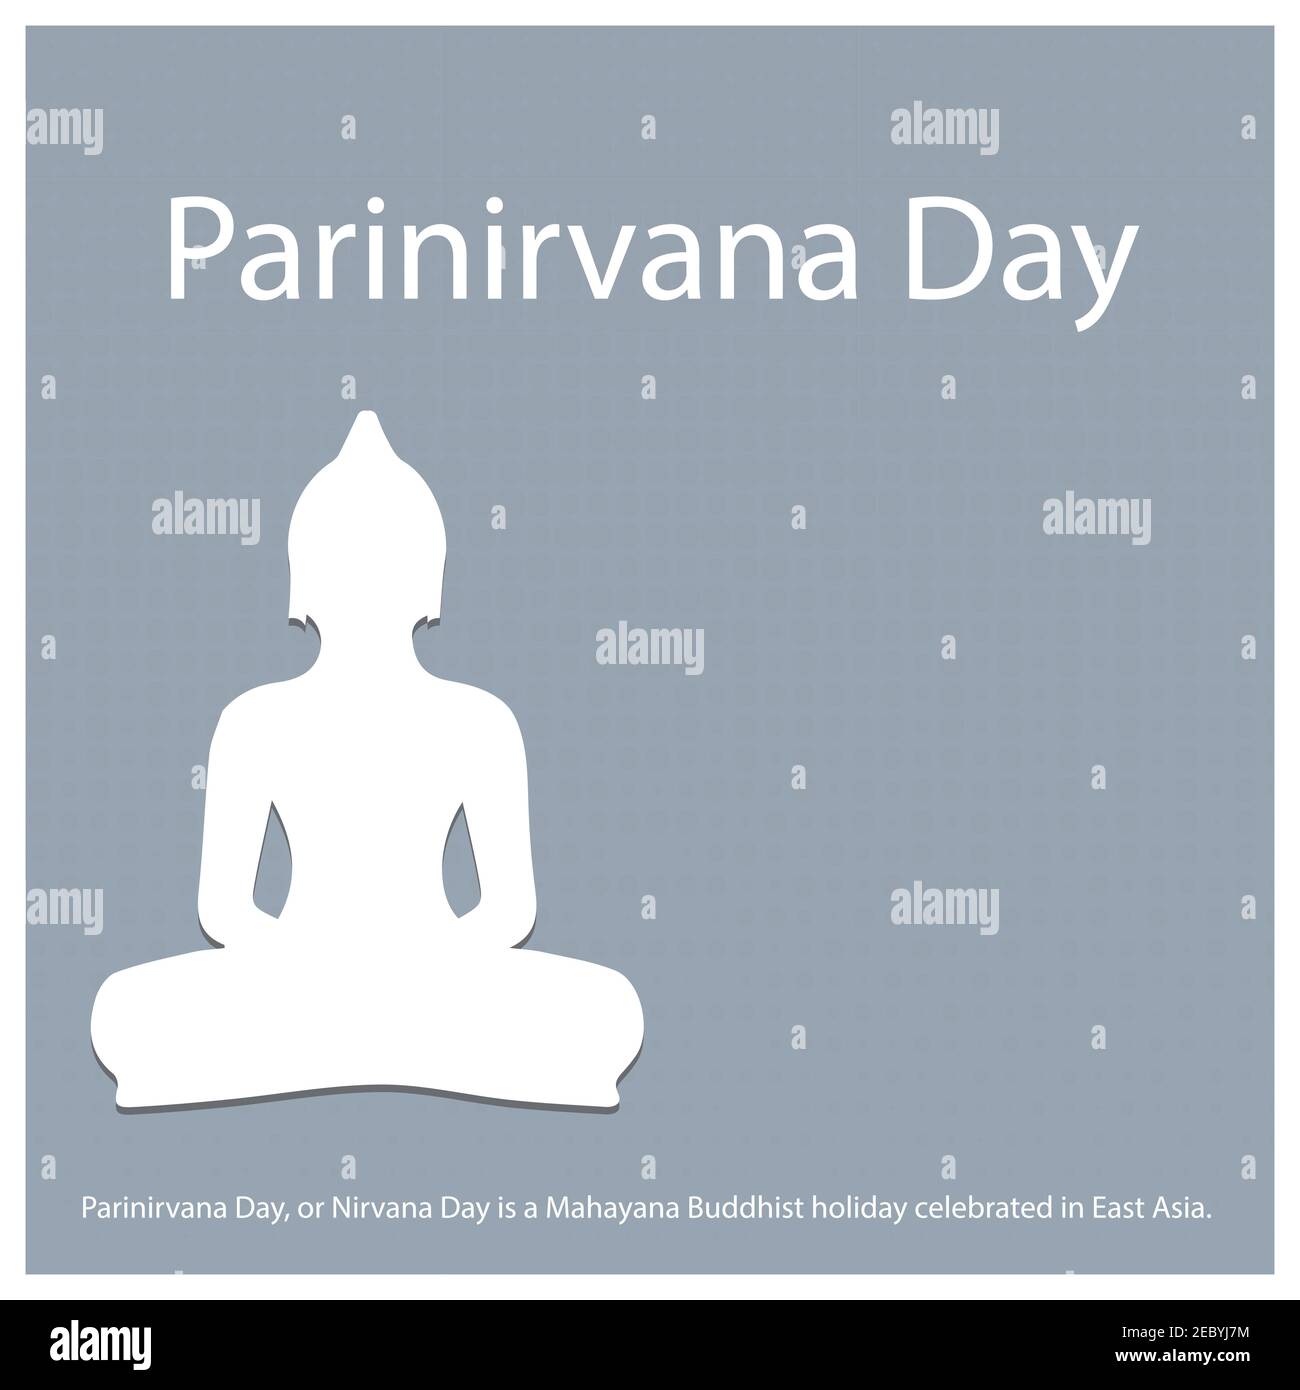 Der Parinirvana-Tag oder der Nirvana-Tag ist ein buddhistischer Mahayana-Feiertag, der in Ostasien gefeiert wird. Stock Vektor